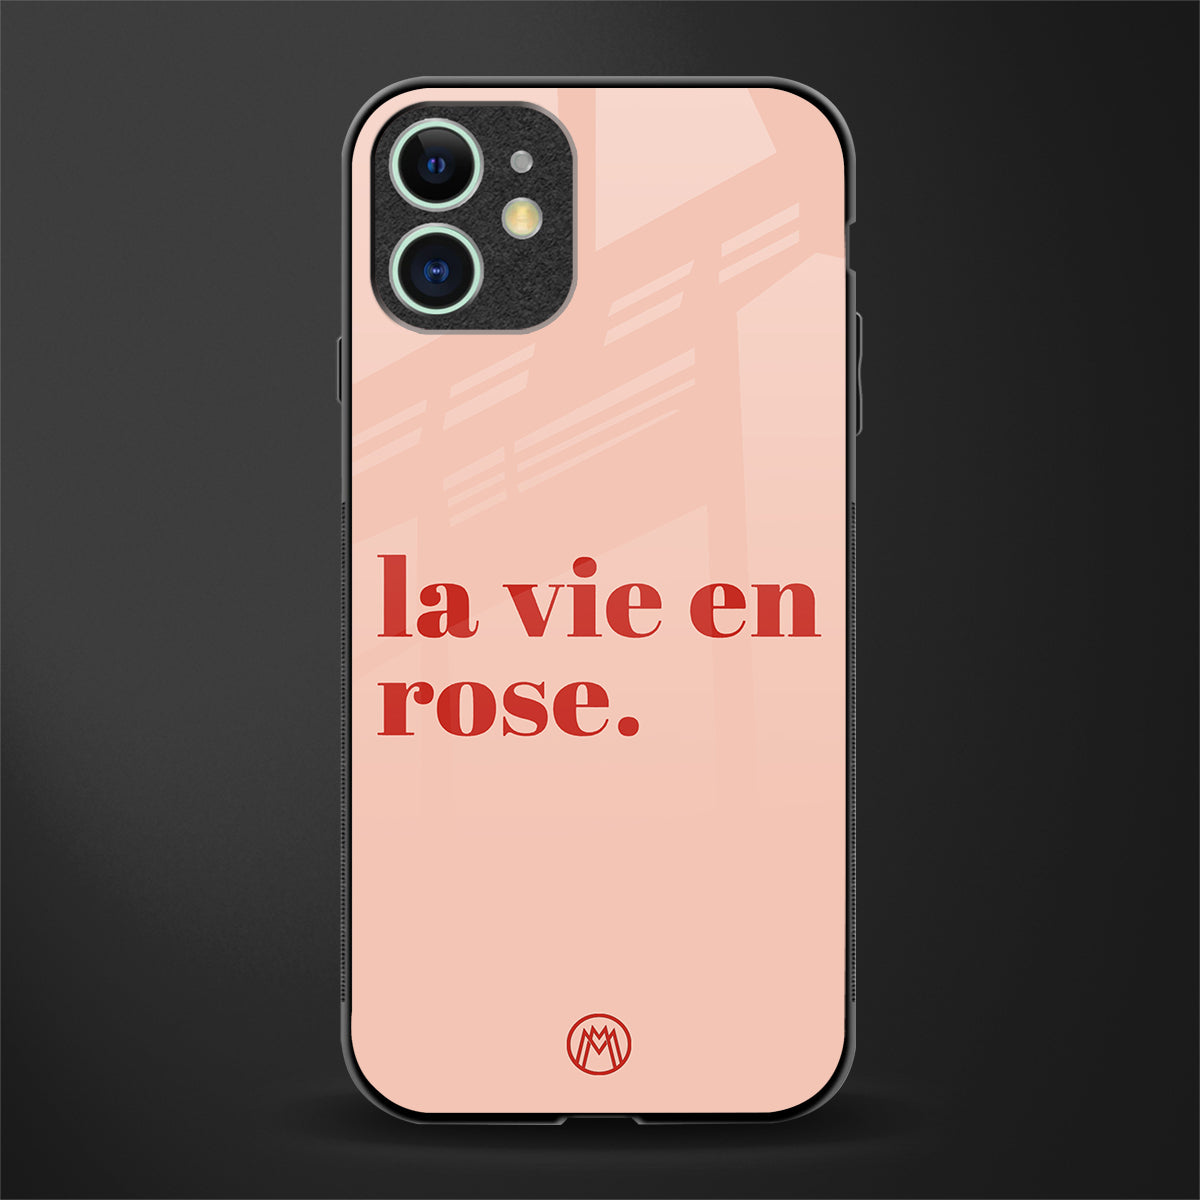 la vie en rose quote glass case for iphone 12 mini image